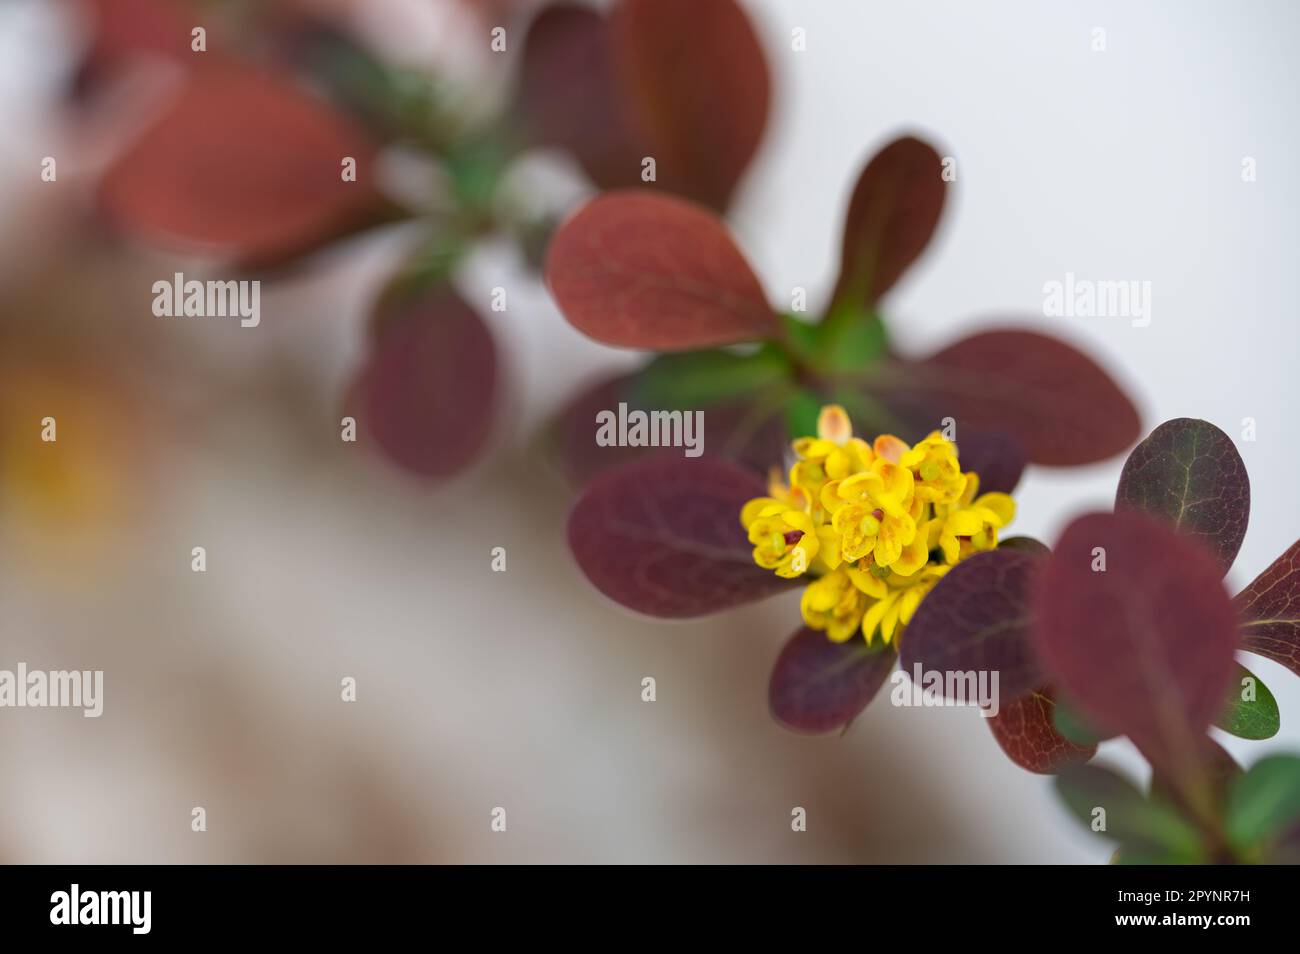 Detail der kleinen gelben Blüten einer roten Barbeere (Berberis thunbergii) im Garten Stockfoto